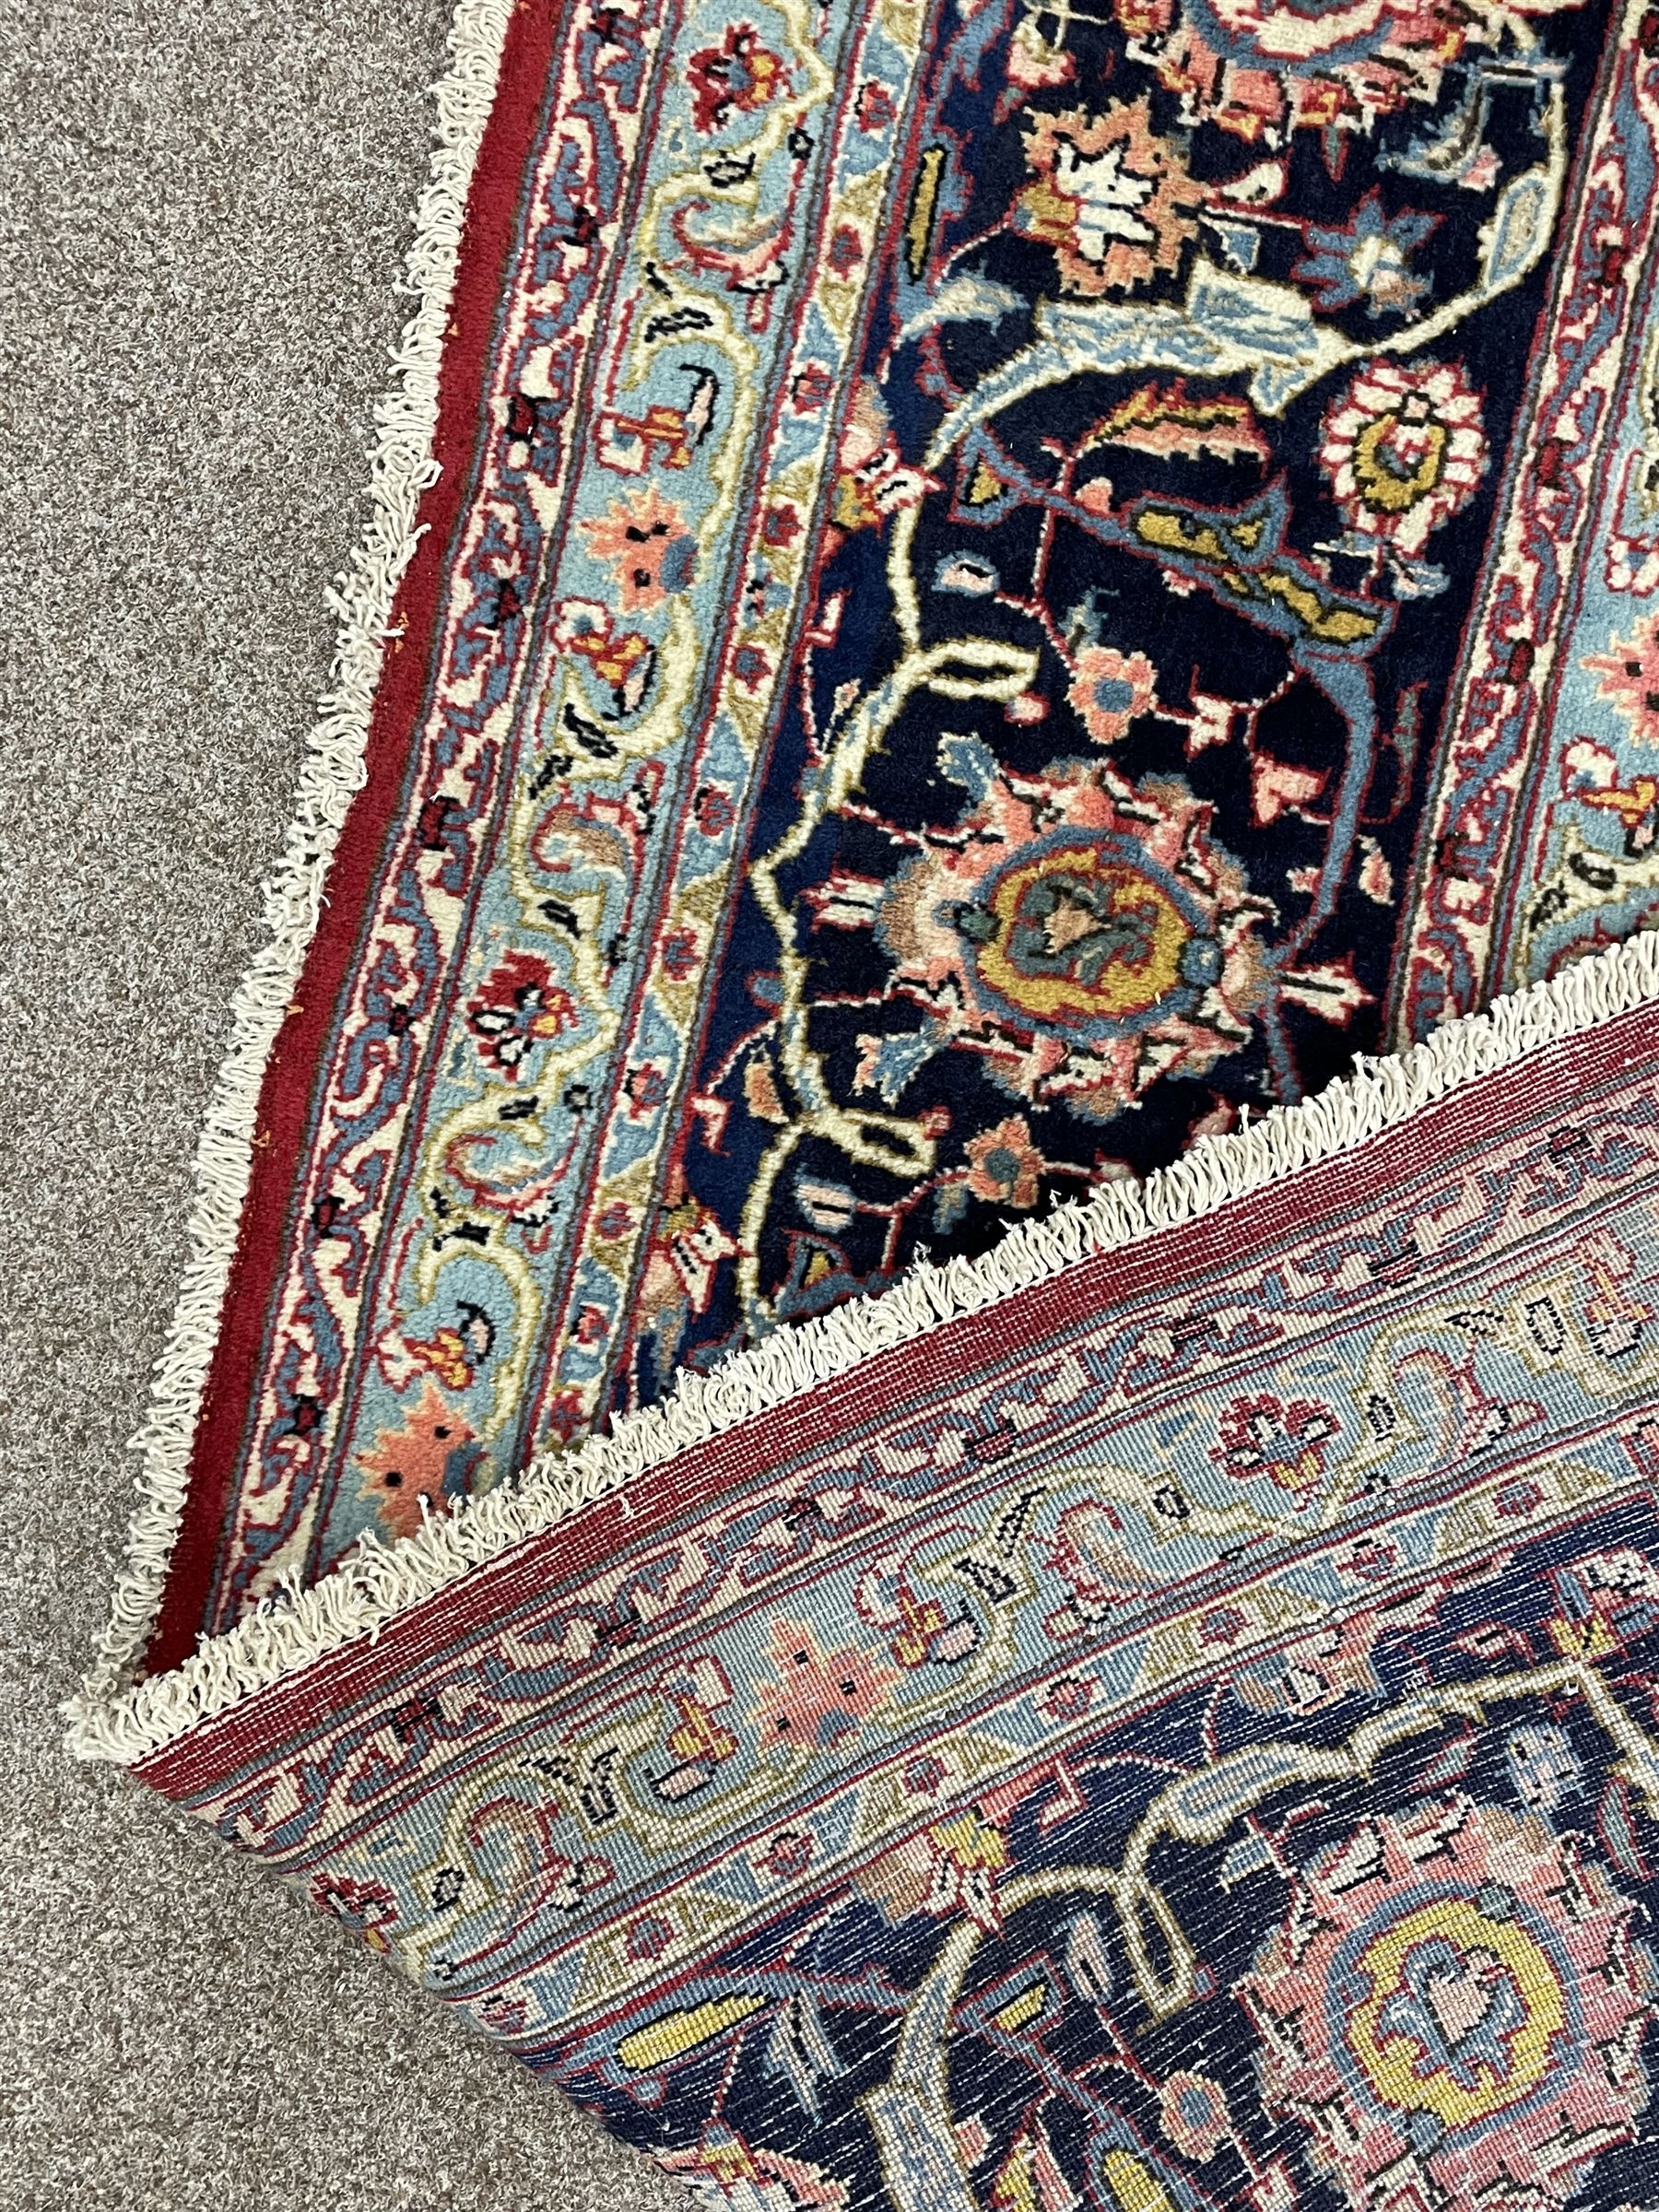 Large Persian Kashan carpet - Image 4 of 9